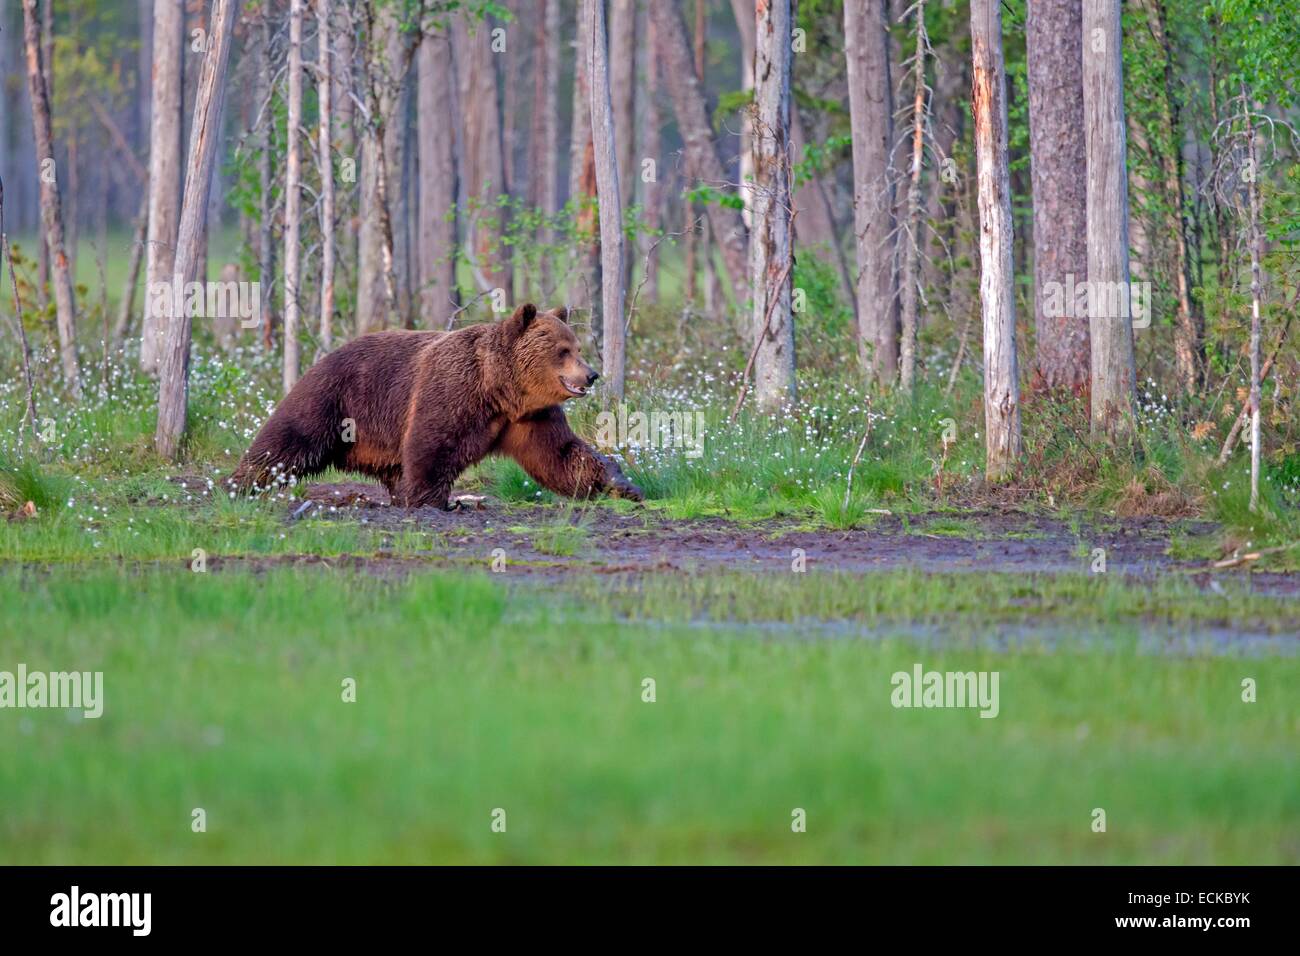 Finland, Kuhmo area, Kajaani, Brown bear (Ursus arctos) Stock Photo